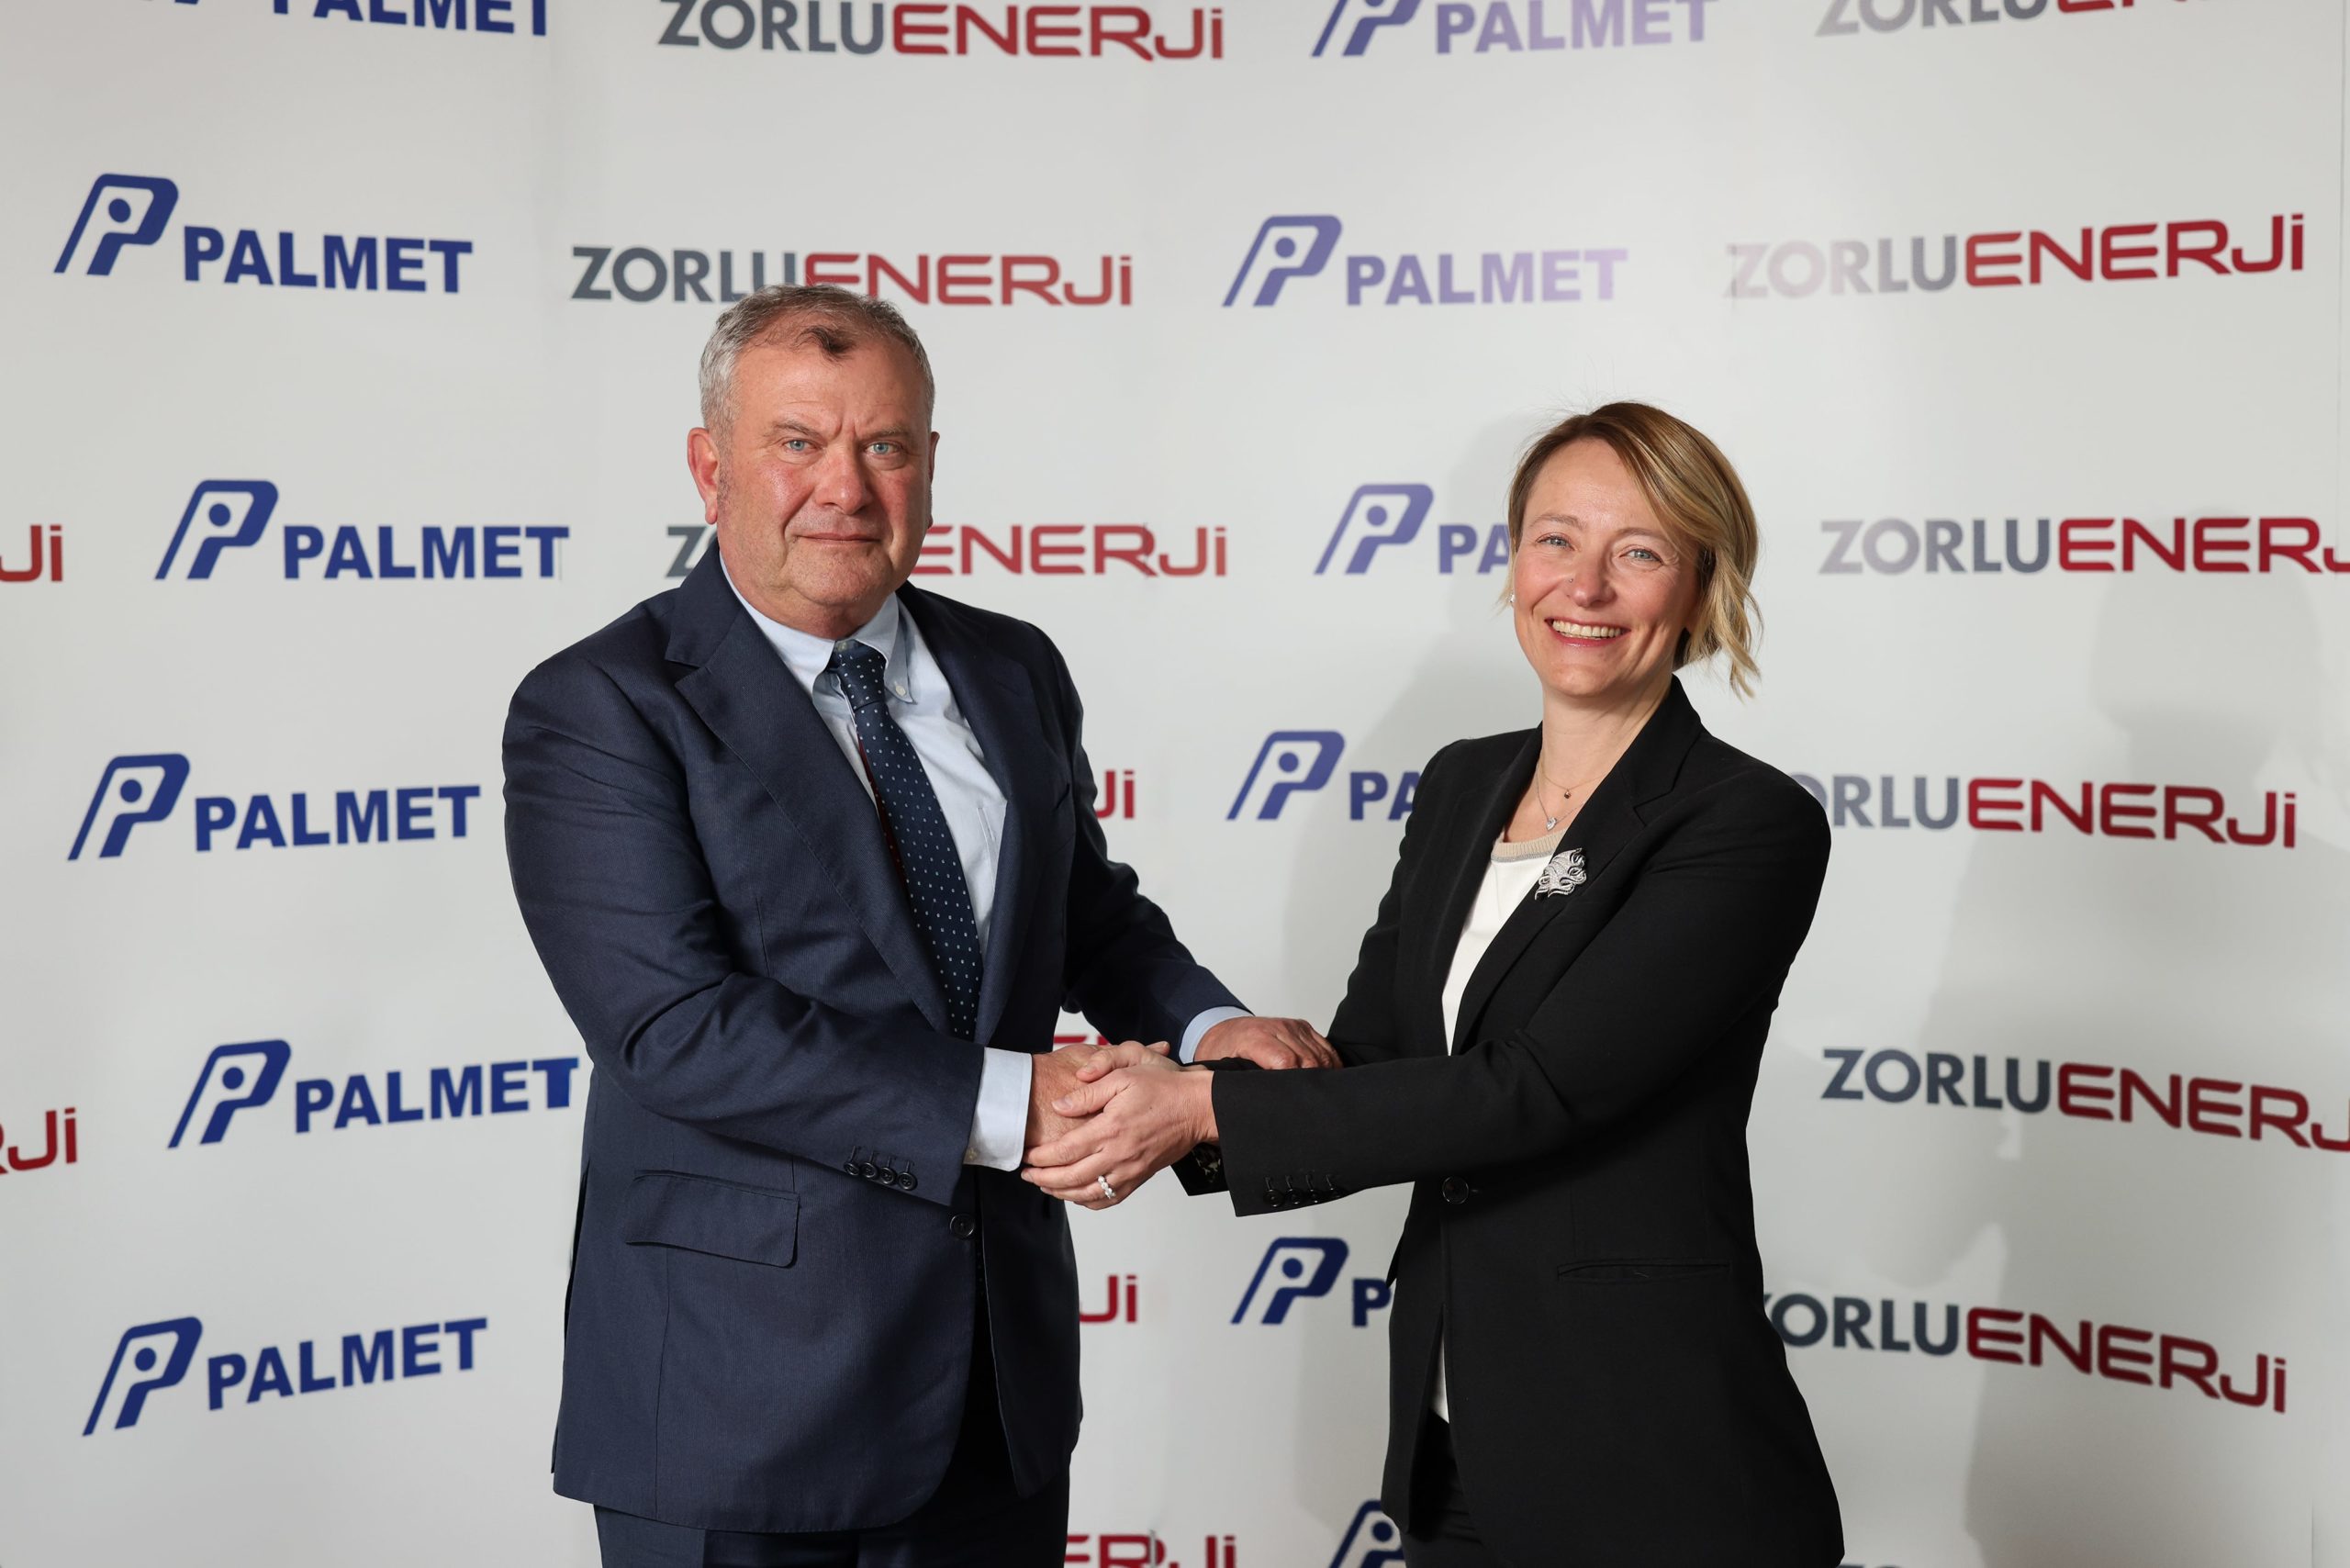 Zorlu Enerji ile sektörün ilk yatırımcısı ve öncülerinden biri olan PALMET Enerji arasında hisse alım sözleşmesi imzalandı.